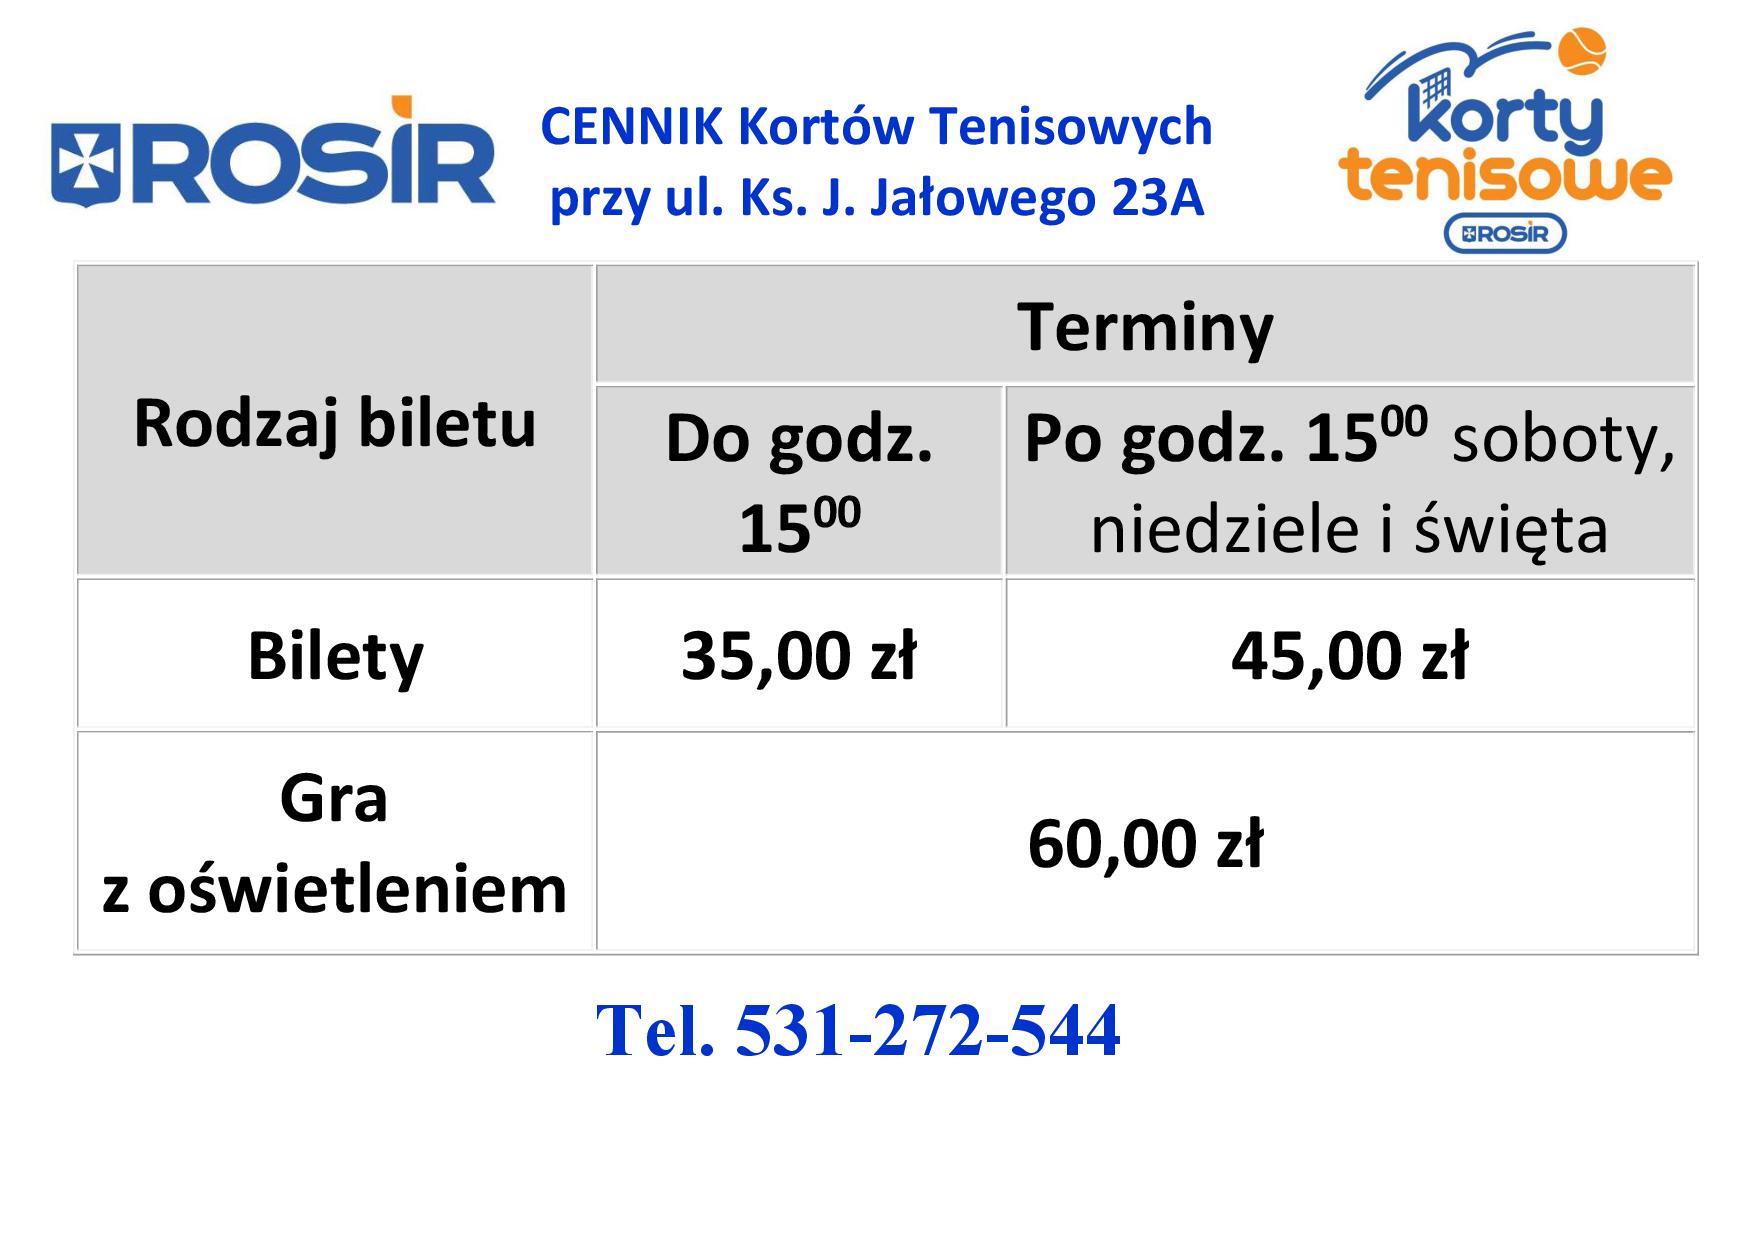 CENNIK_2022_Kortów_Tenisowych1.jpg